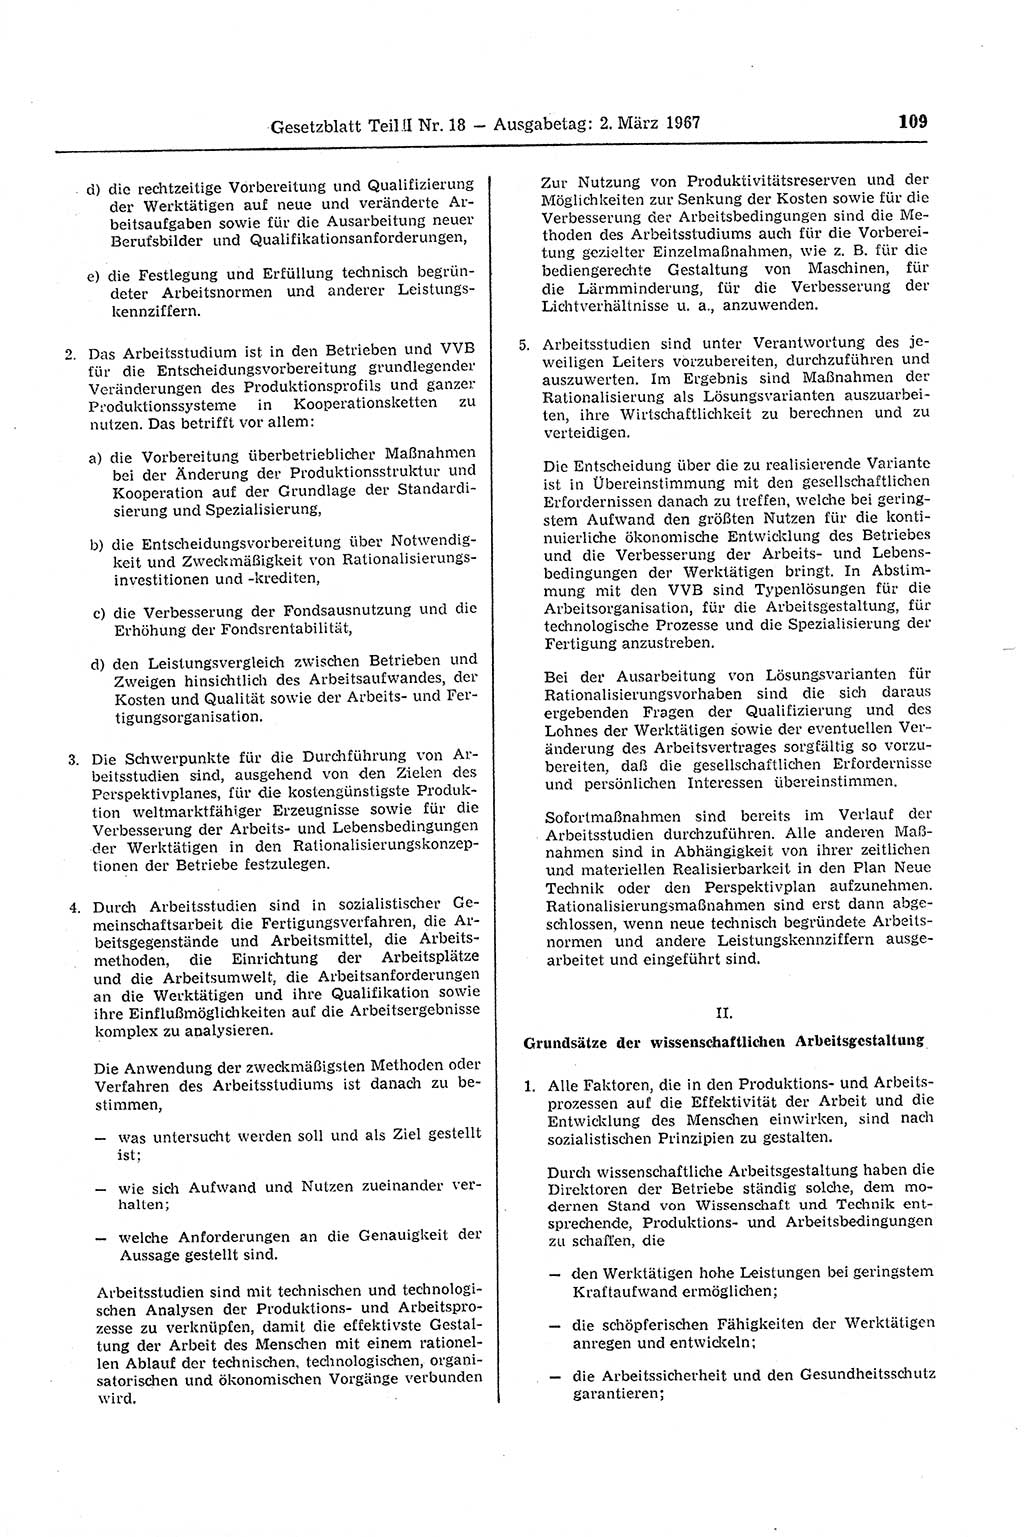 Gesetzblatt (GBl.) der Deutschen Demokratischen Republik (DDR) Teil ⅠⅠ 1967, Seite 109 (GBl. DDR ⅠⅠ 1967, S. 109)